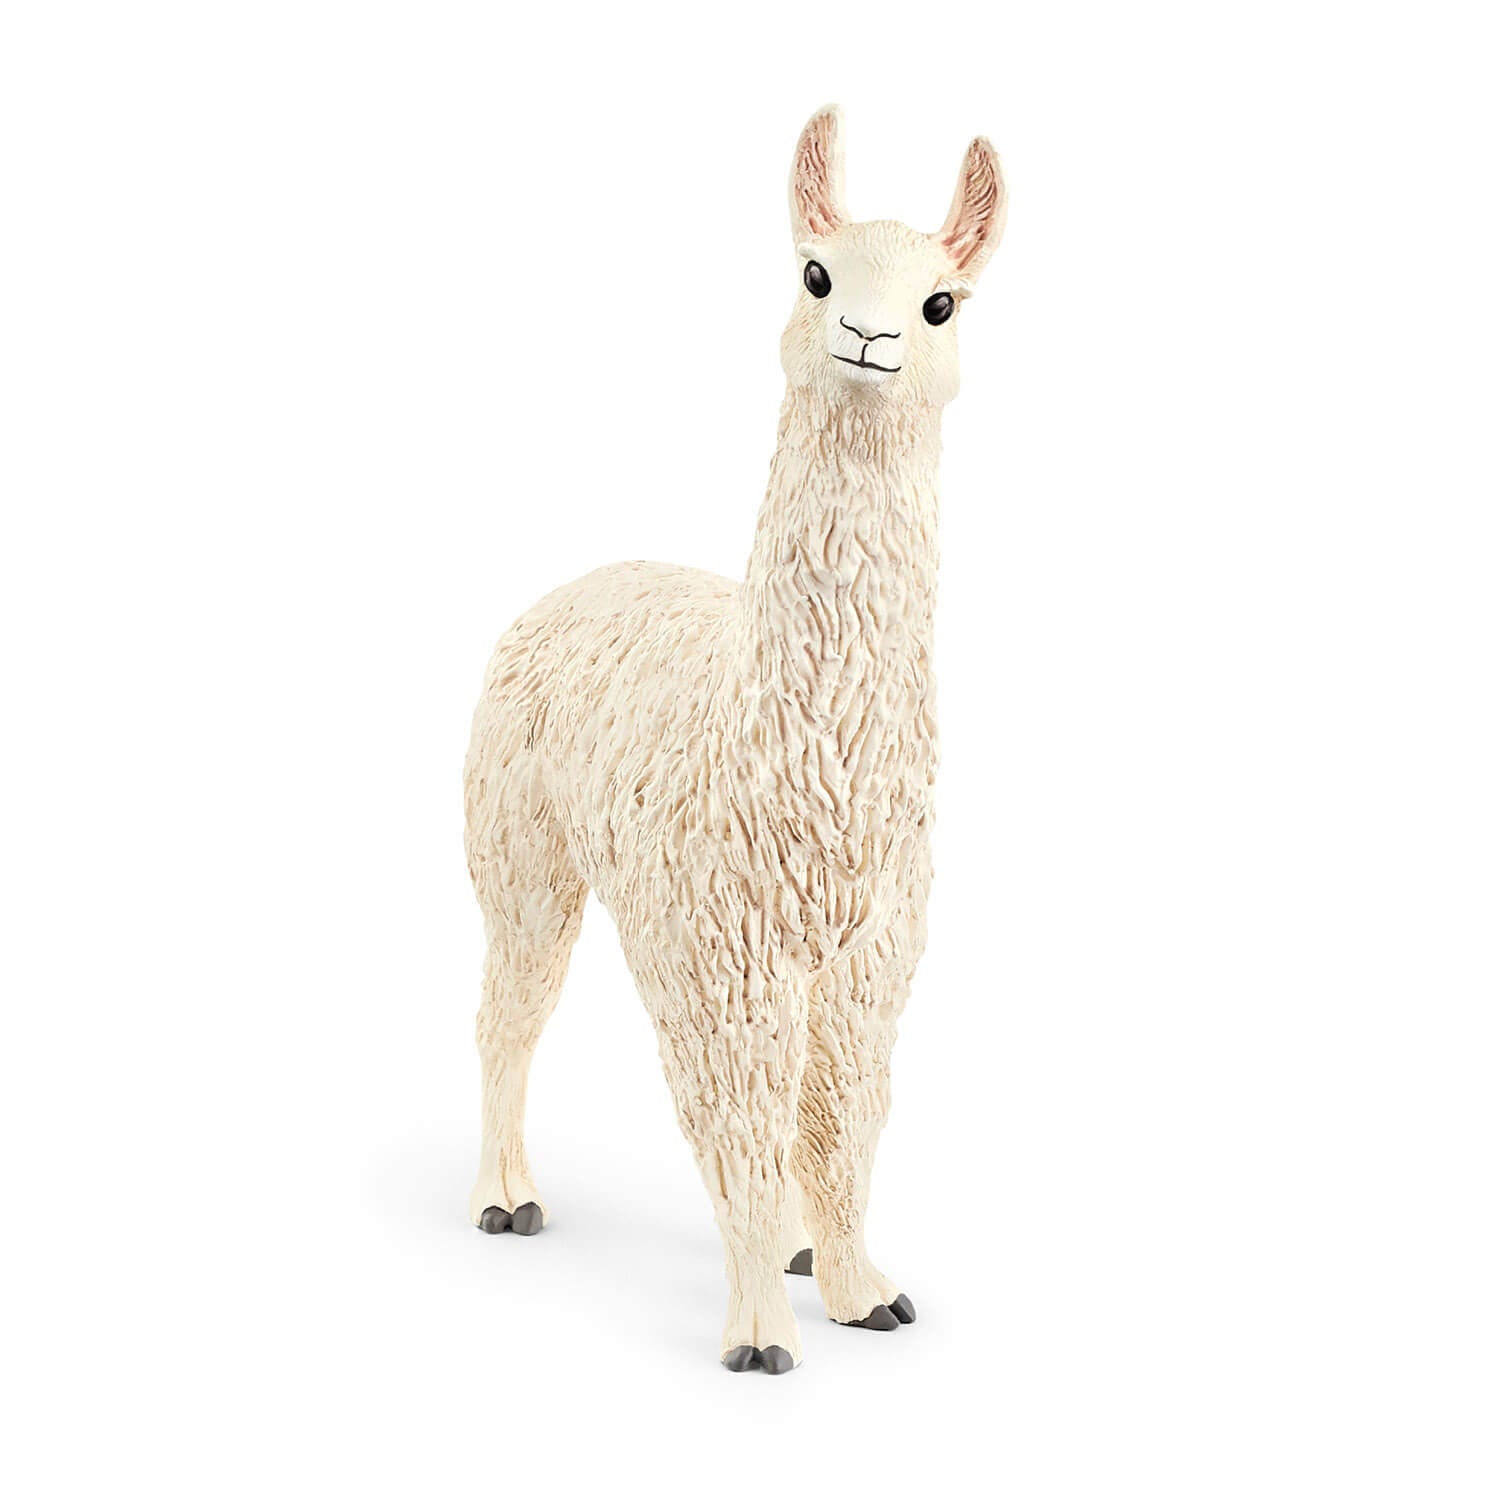 Schleich Farm World Llama Animal Figure (13920)